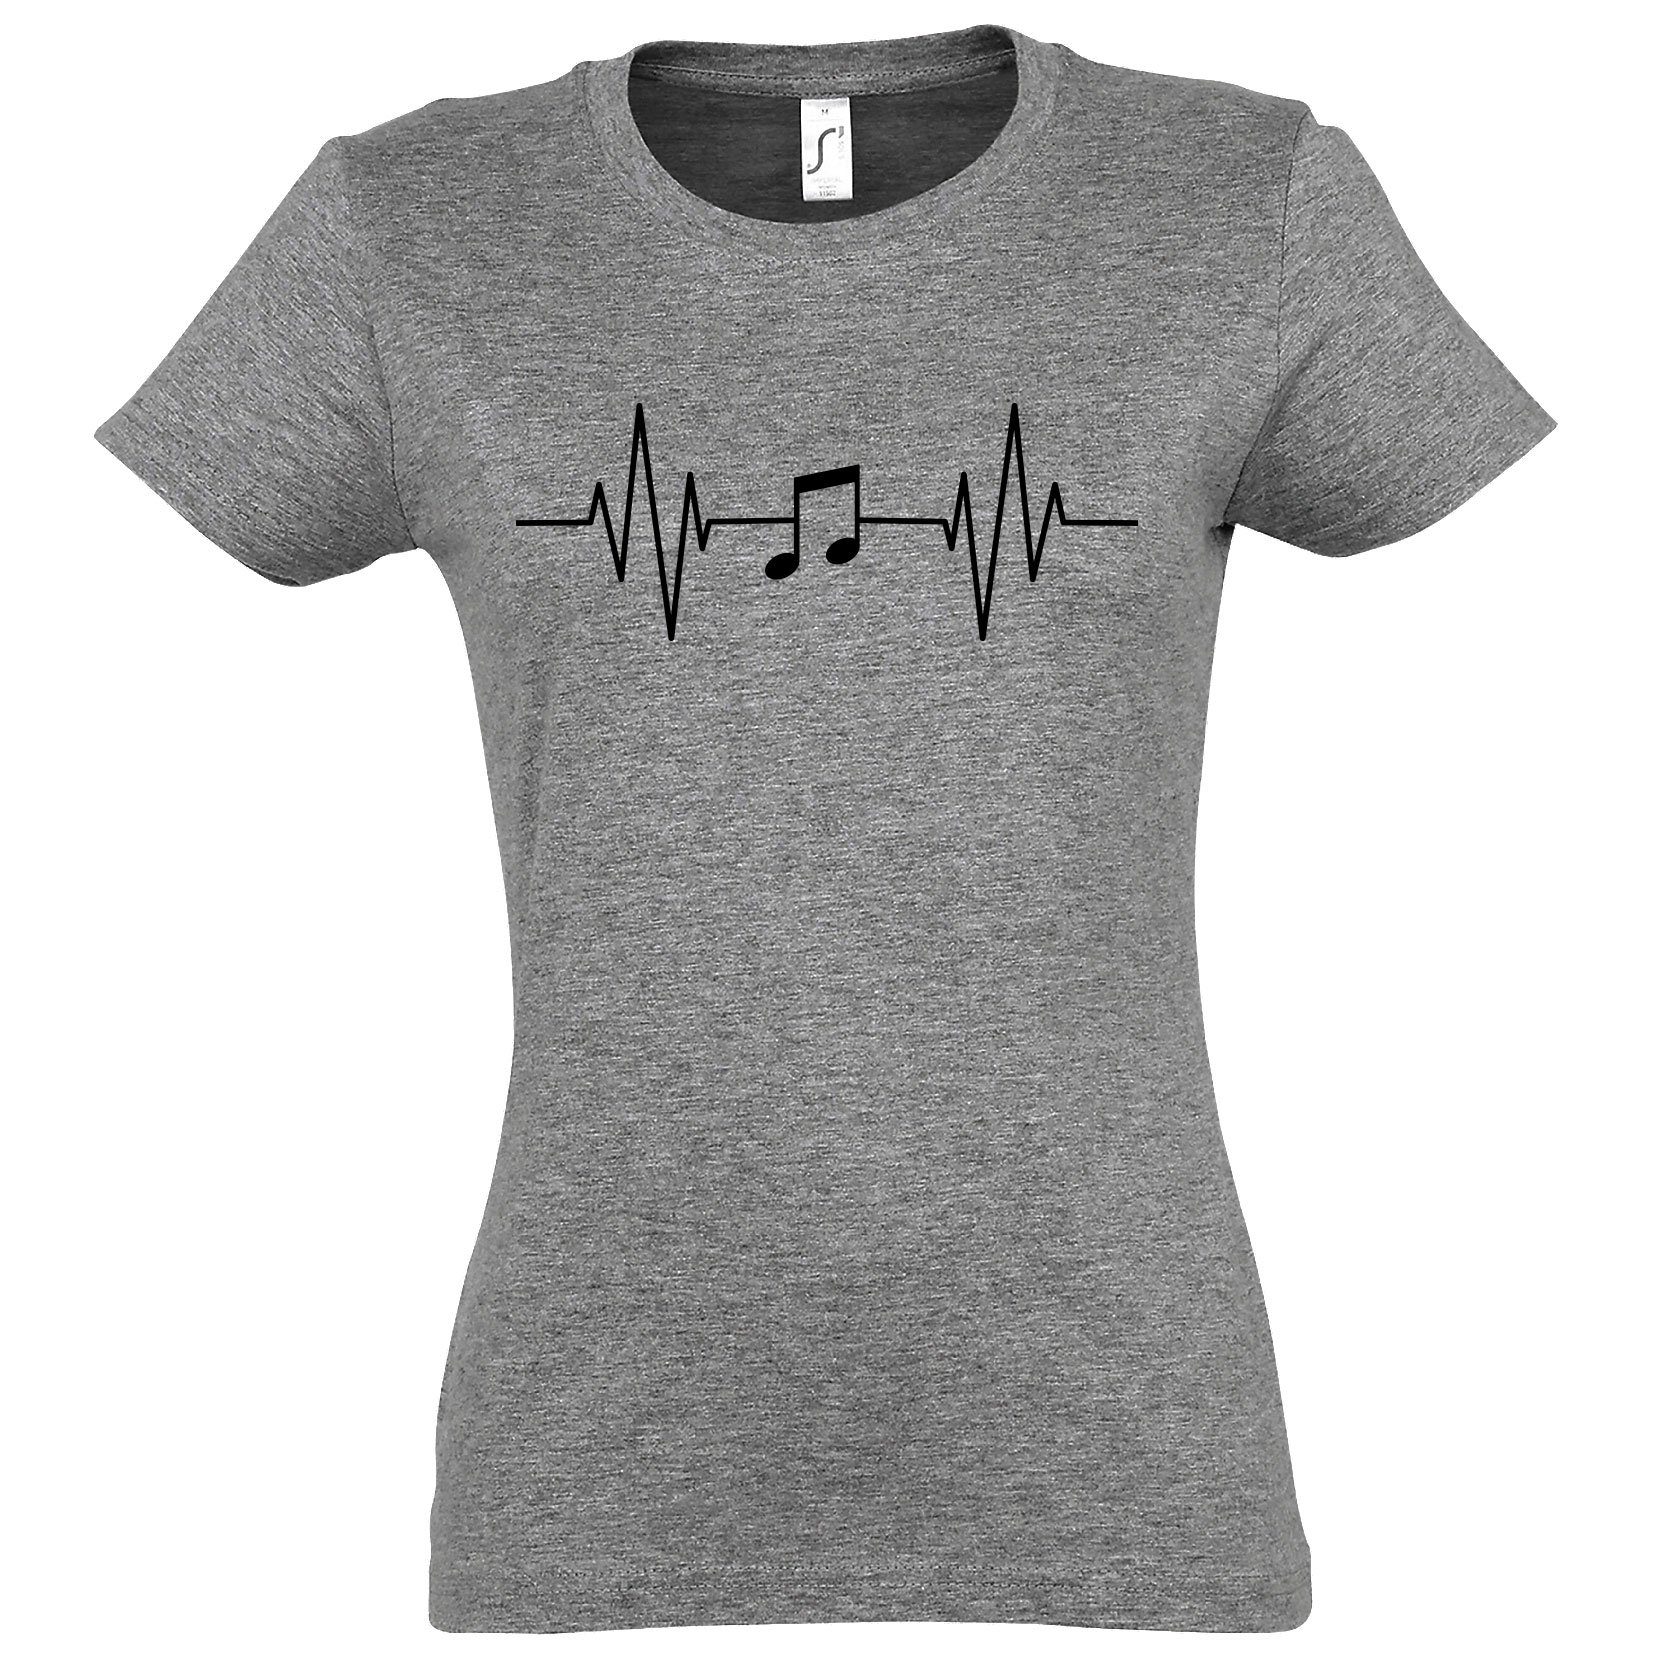 Youth Designz T-Shirt Heartbeat Musik Note Damen Shirt mit Music Frontprint Grau